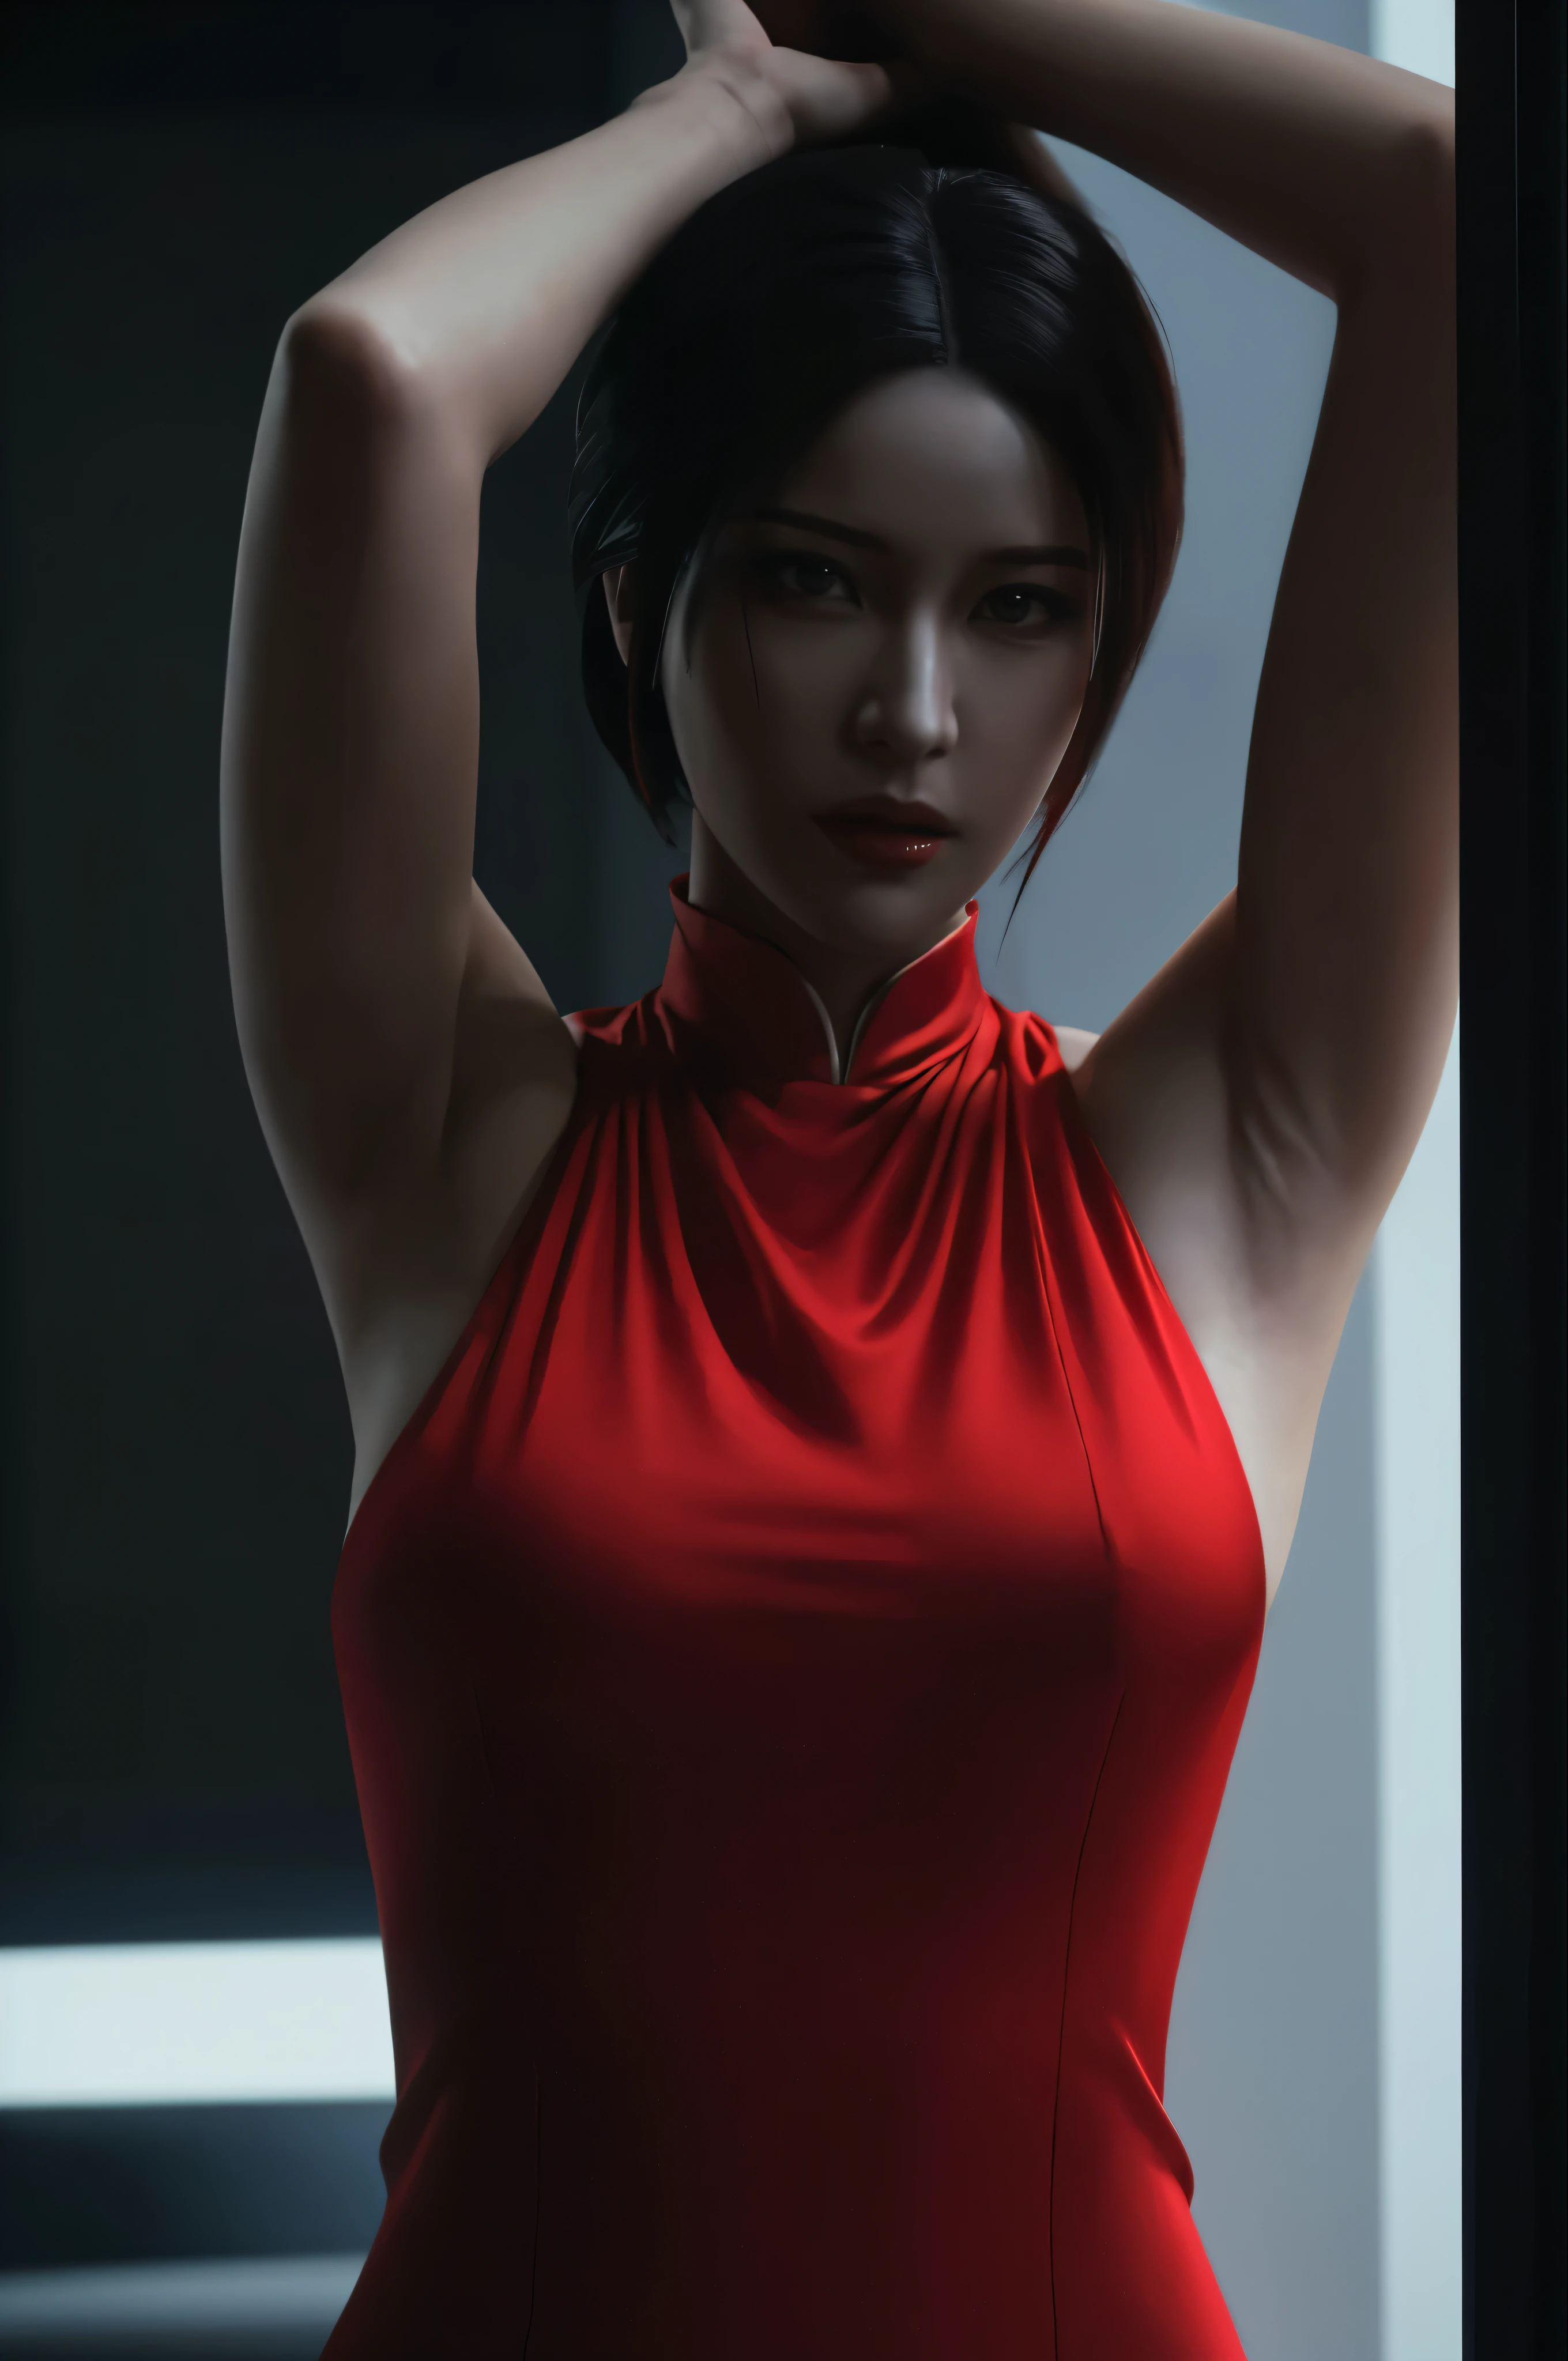 (höchste Qualität:1.3), filmische Aufnahme, Meisterwerk, (scharfer Fokus:1.5), (fotorealistisch:1.3), Ada Wong ist eine prominente Figur in der Videospielserie Resident Evil. Sie ist bekannt für ihre mysteriöse und rätselhafte Persönlichkeit. Mit ihrer markanten Erscheinung, Ada trägt oft ein rotes Qipao-Kleid, Das ist ein traditionelles chinesisches Outfit. Ihr dunkles Haar, intensive Augen, und eine Vorliebe für High Heels tragen zu ihrem verführerischen und ikonischen Look bei.

Ada zeichnet sich durch ihre Intelligenz aus, Einfallsreichtum, und Kampffähigkeiten. Sie ist geschickt im Umgang mit Schusswaffen, Nahkampfwaffen, und Gadgets, was sie zu einer vielseitigen Kämpferin macht. Während der gesamten Serie, Sie wird oft als unabhängige und verschlossene Person gesehen, getrieben von ihren eigenen Motiven. Ihre Interaktionen mit anderen Charakteren sind in der Regel von einem Gefühl der Zweideutigkeit und versteckten Absichten geprägt.

Adas Beteiligung an der Serie dreht sich typischerweise um Spionage, Aufdeckung von Verschwörungen, und Umgang mit Biogefährdungsausbrüchen. Ihre komplexen Beziehungen zu anderen Charakteren, such as Leon S. KENNEDY, tragen zur Intrige und Dramatik der Spielgeschichte bei. Gesamt, Ada Wongs facettenreiche Persönlichkeit, Faszinierendes Erscheinungsbild, und ihre zentrale Rolle in der Resident Evil-Reihe machen sie zu einer unvergesslichen und ikonischen Spielfigur, (Hochdetaillierte Haut),  (Detailliertes Gesicht), detaillierter Hintergrund, filmische Beleuchtung, dramatische Beleuchtung, volumetrische Beleuchtung,  komplizierte Details, UHD,